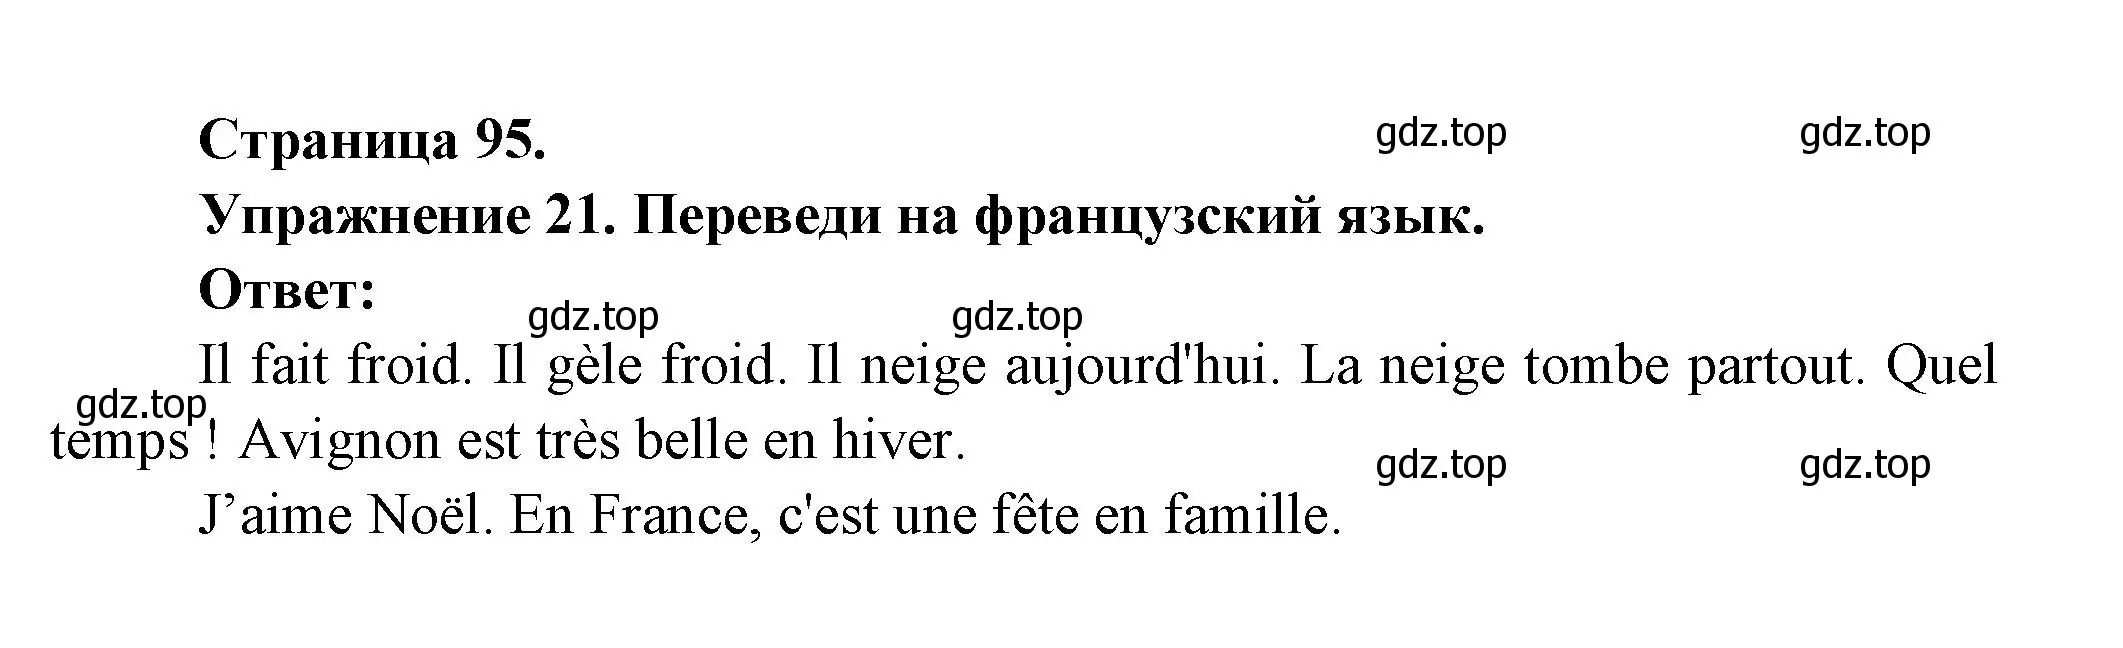 Решение номер 21 (страница 95) гдз по французскому языку 5 класс Береговская, Белосельская, учебник 1 часть